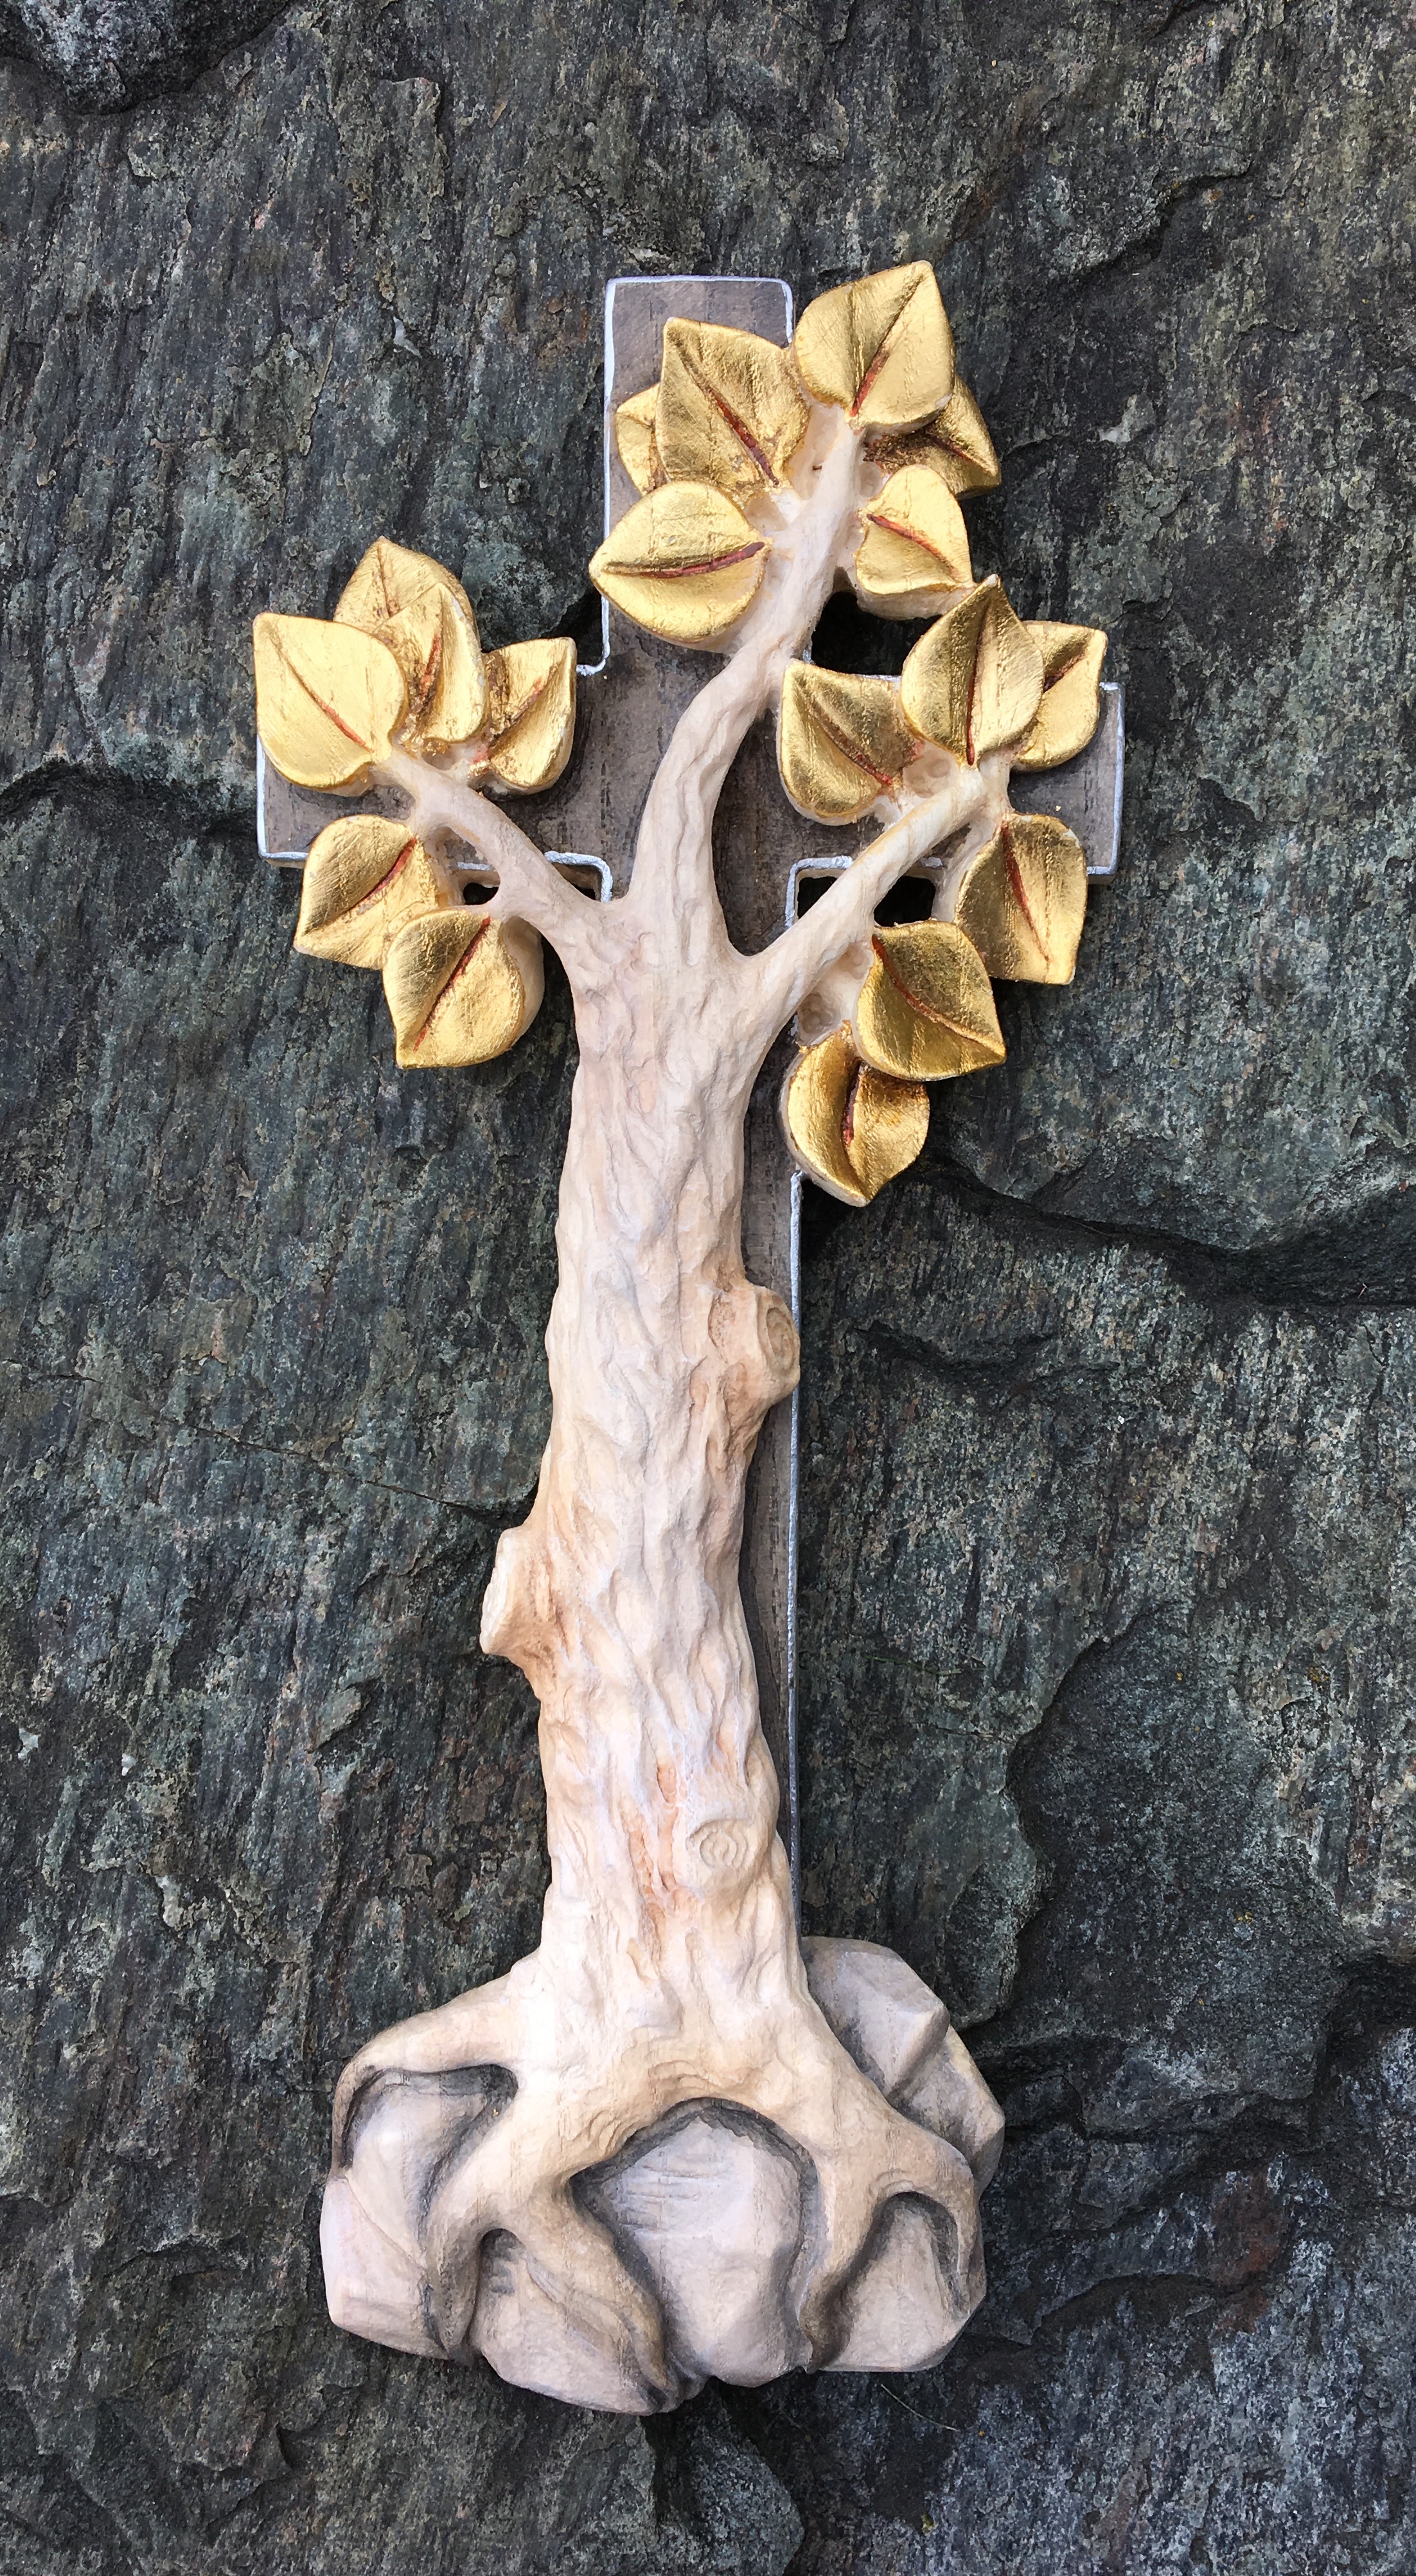 Kreuz mit Lebensbaum, aus Holz geschnitzt